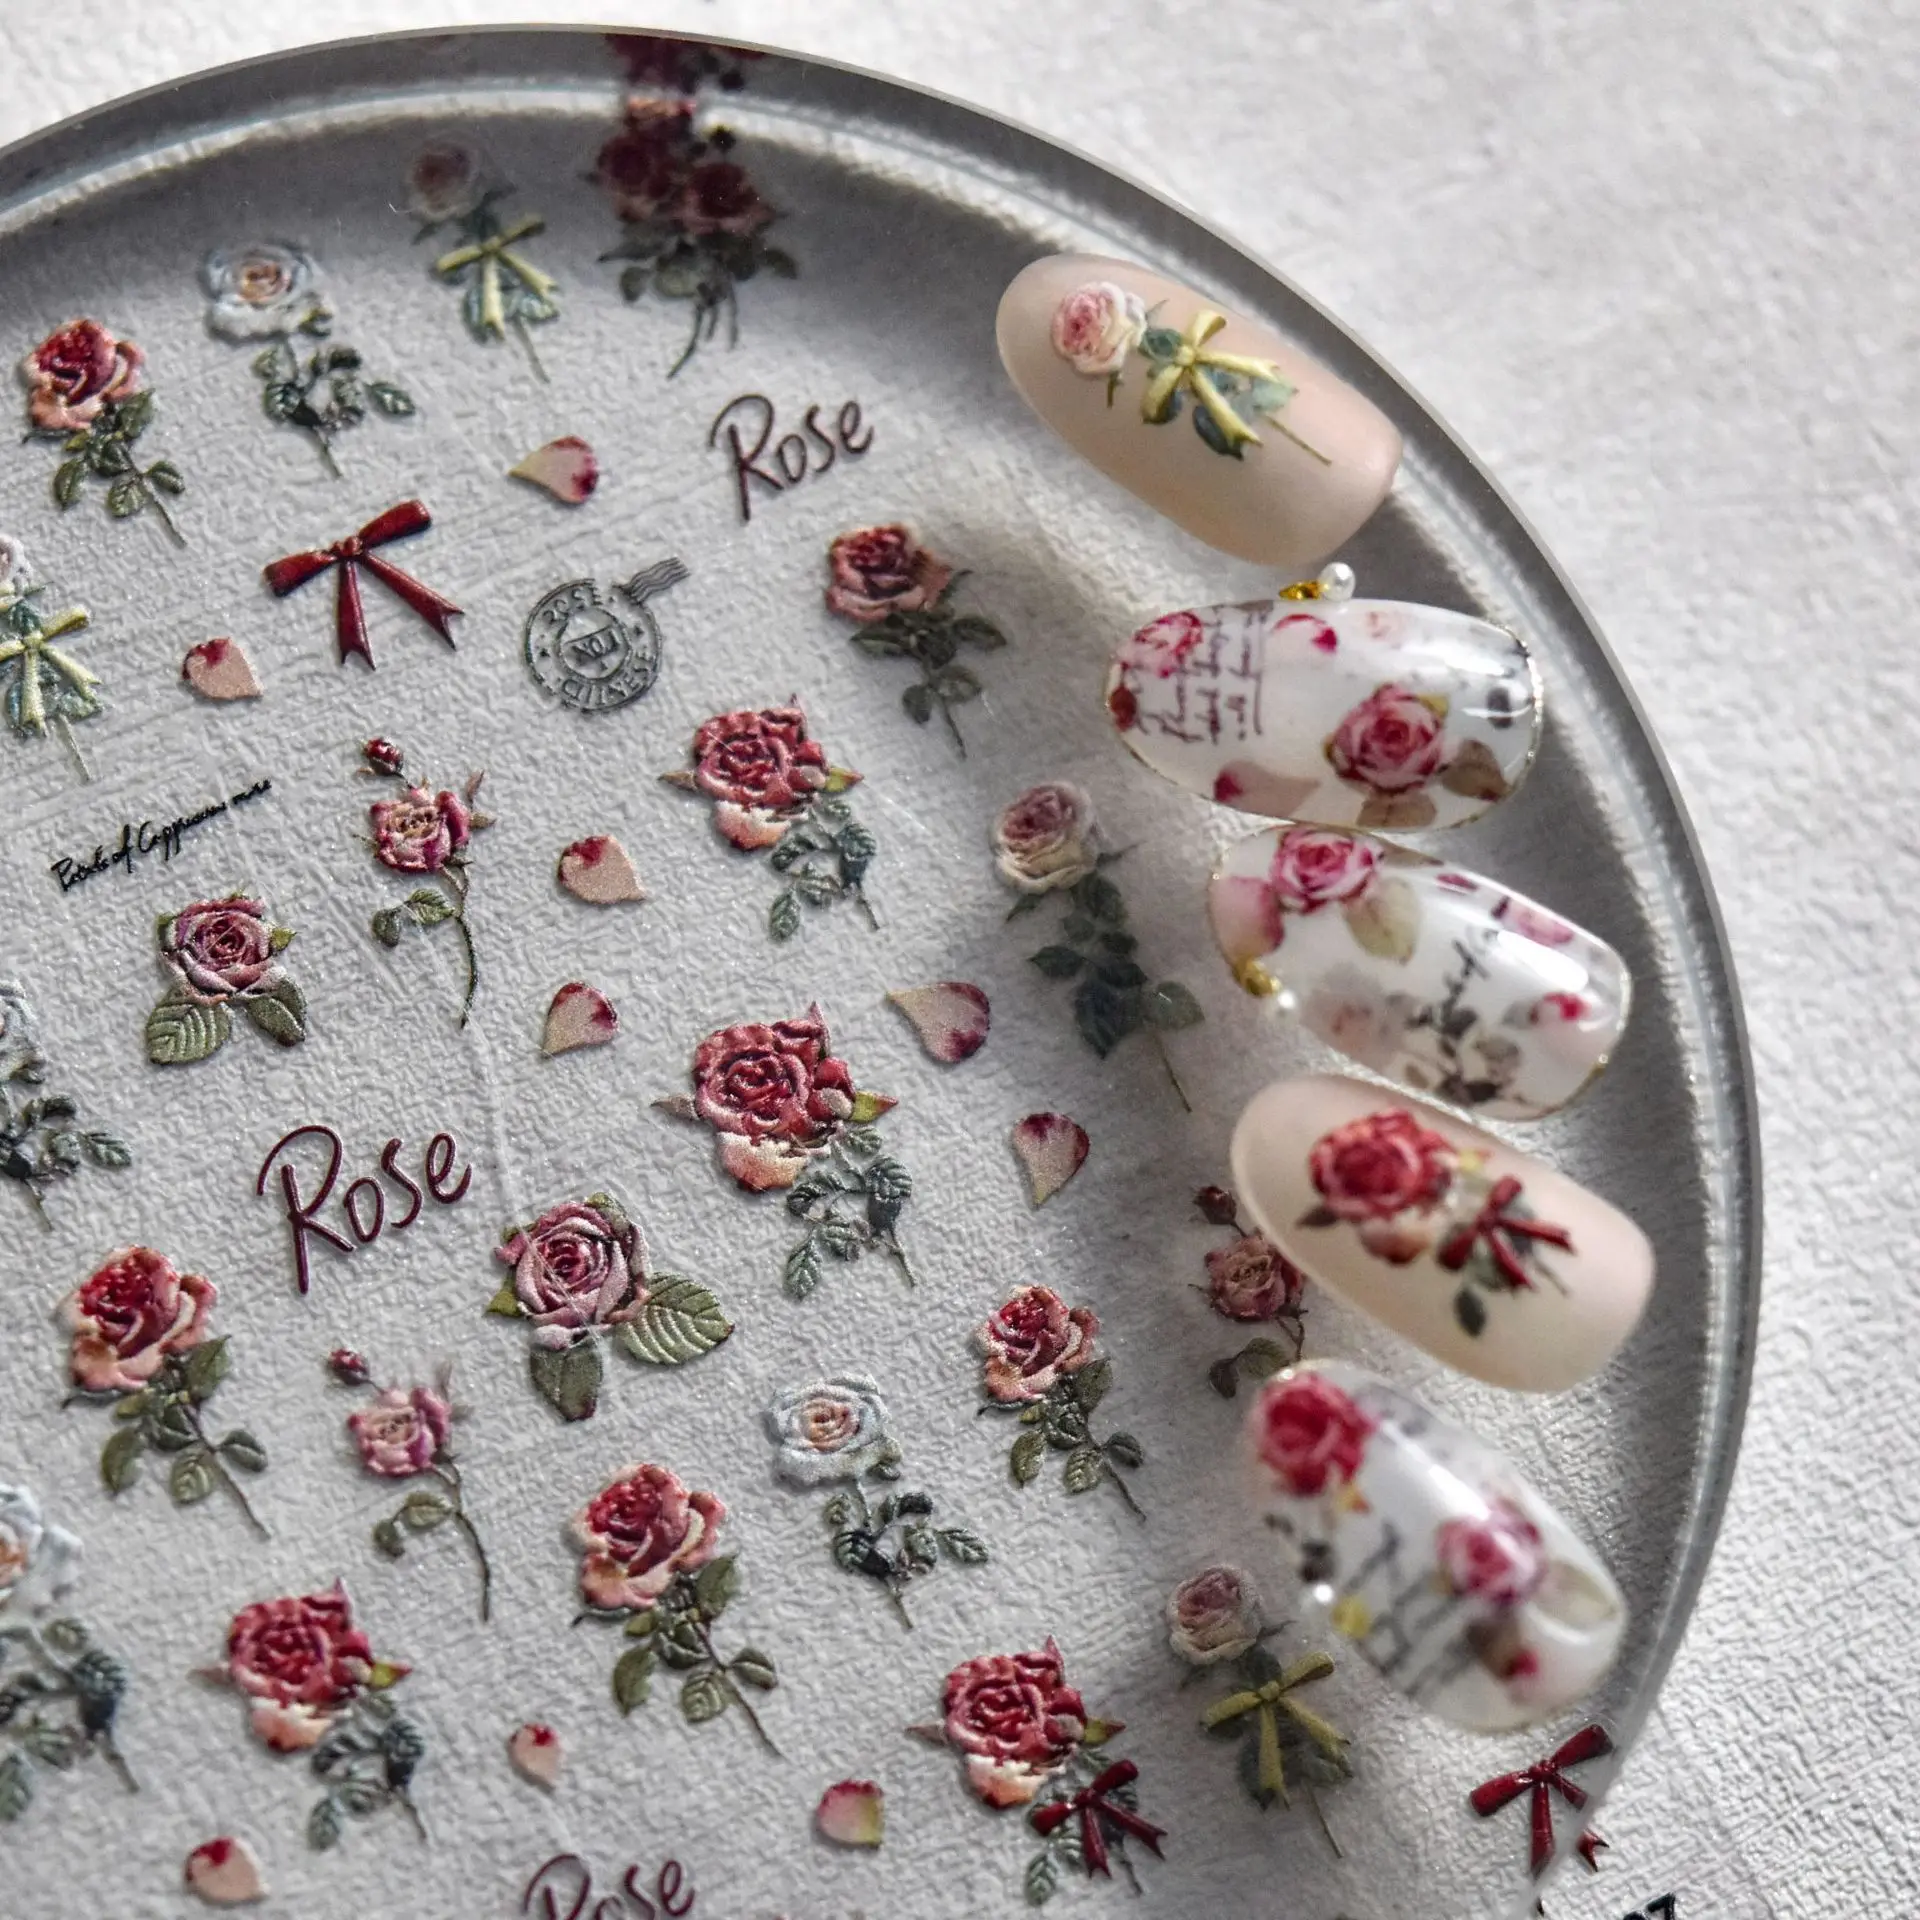 5D Романтические наклейки для ногтей из фольги из розового золота, новые украшения для ногтей на День Святого Валентина с рельефным дизайном своими руками